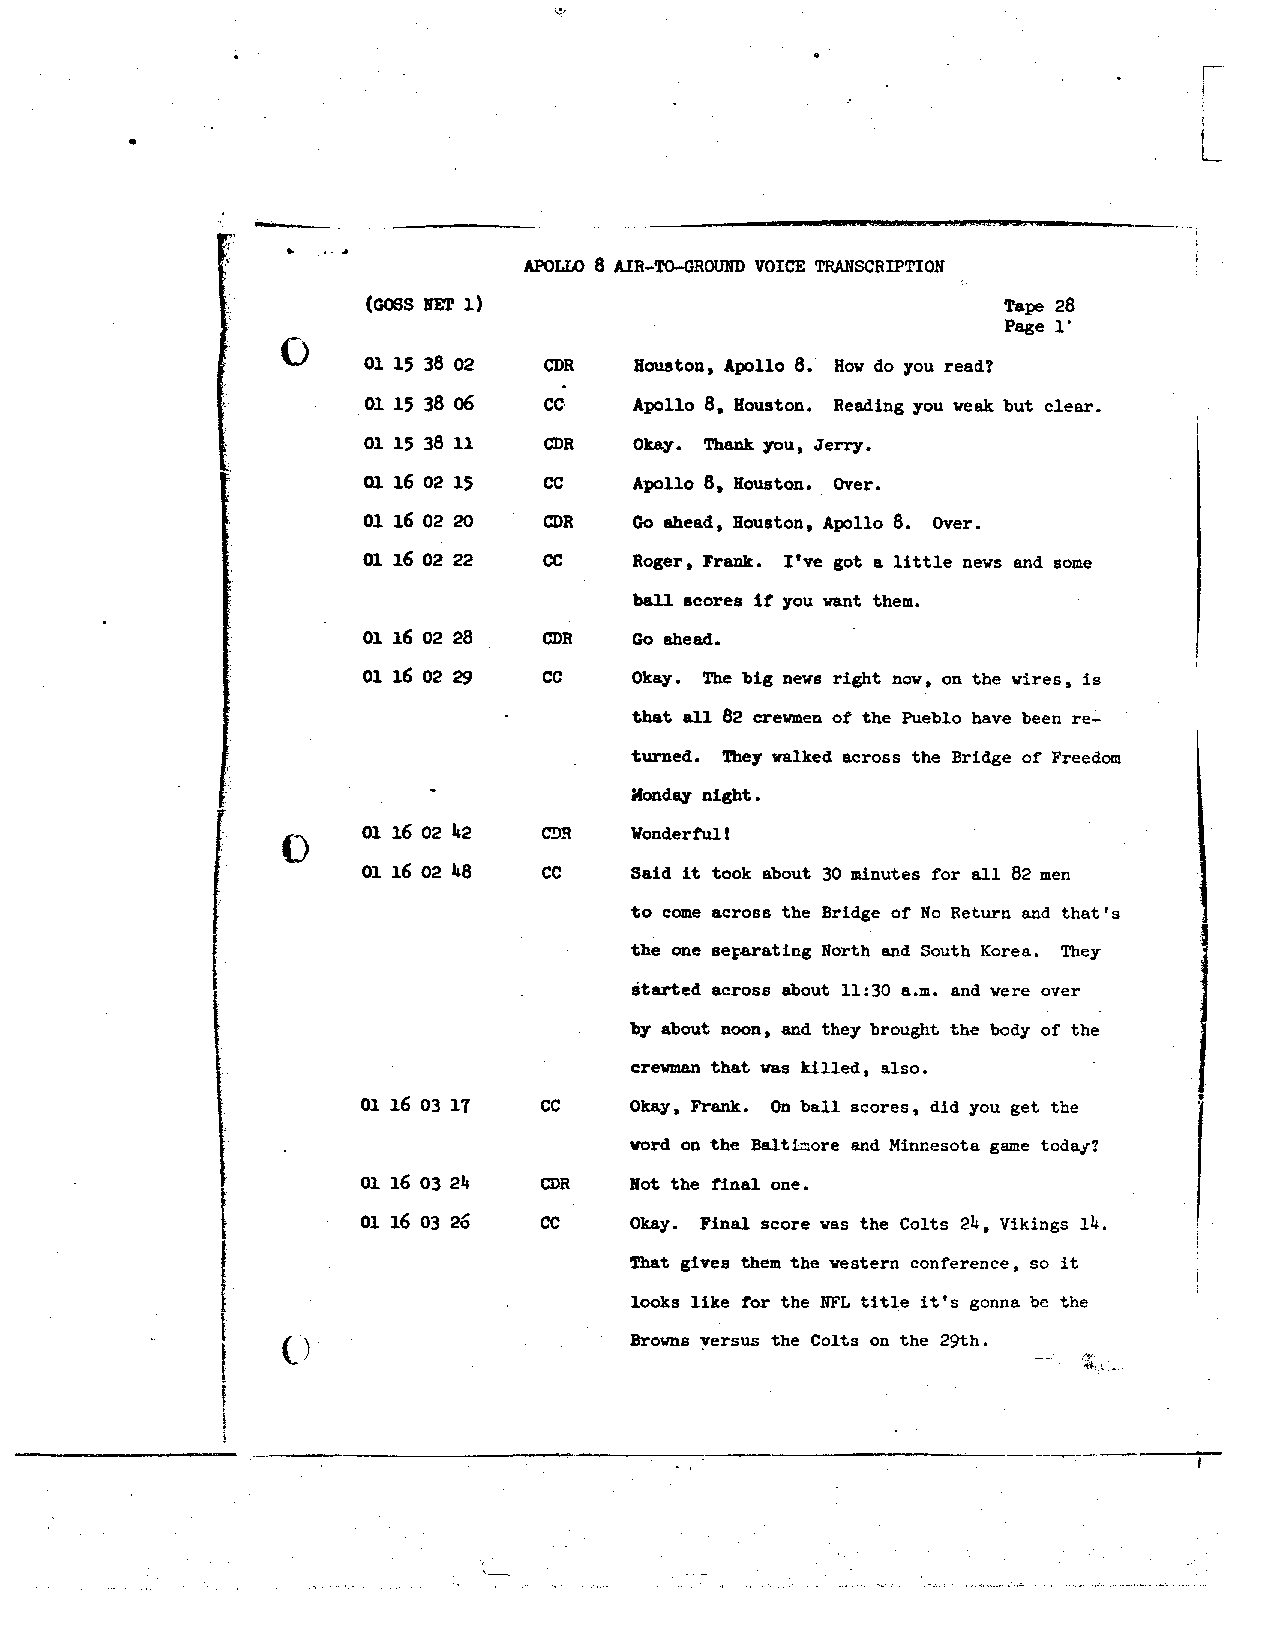 Page 222 of Apollo 8’s original transcript